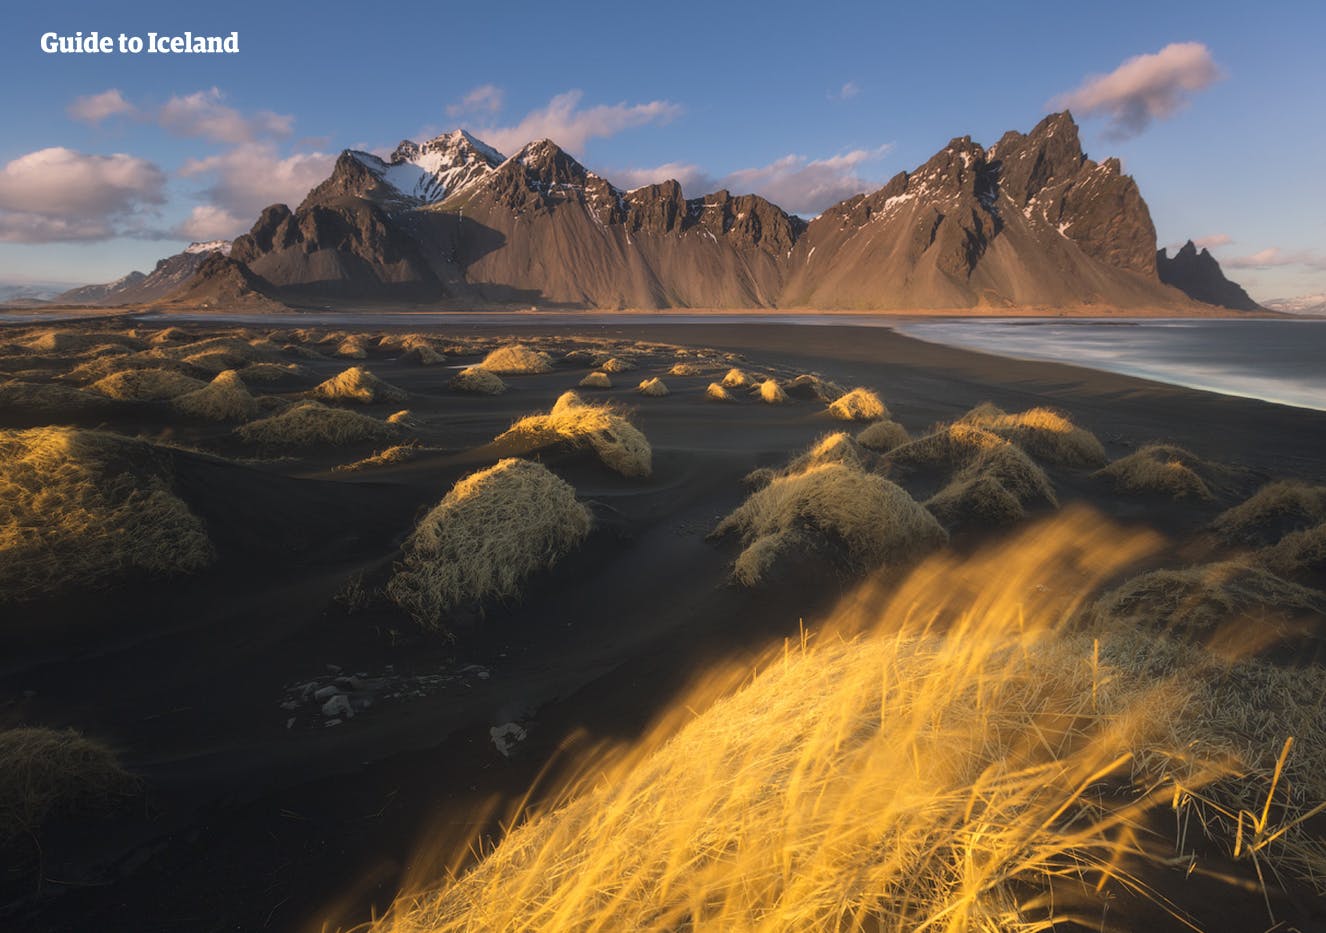 ทางเหนือของไอซ์แลนด์มีพลังงานความร้อนใต้พิภพเยอะมาก